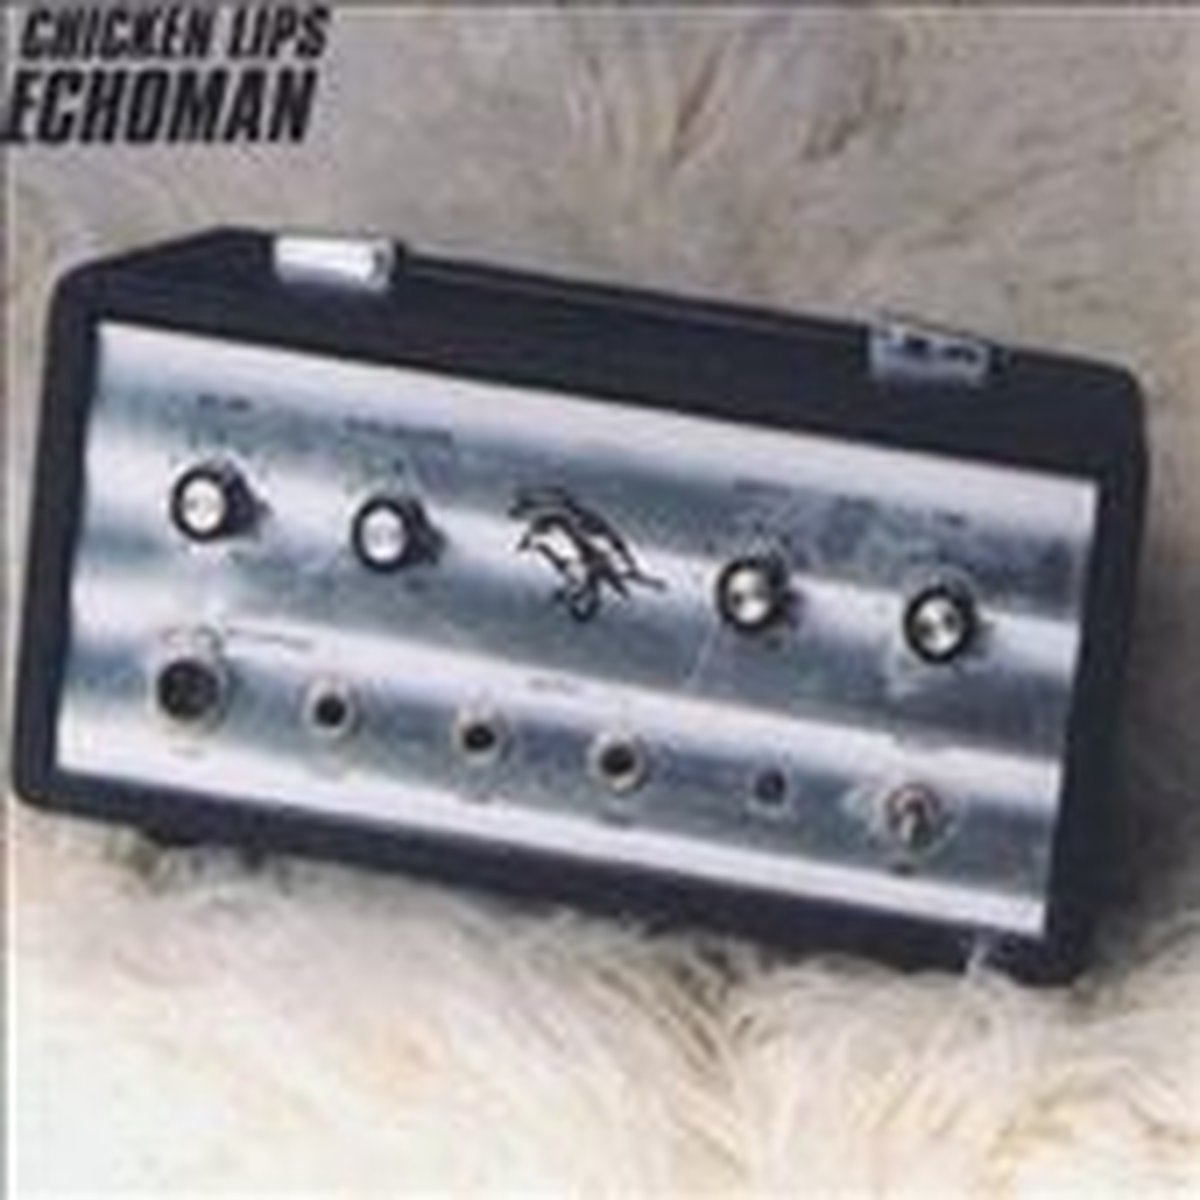 Echoman - Chicken Lips